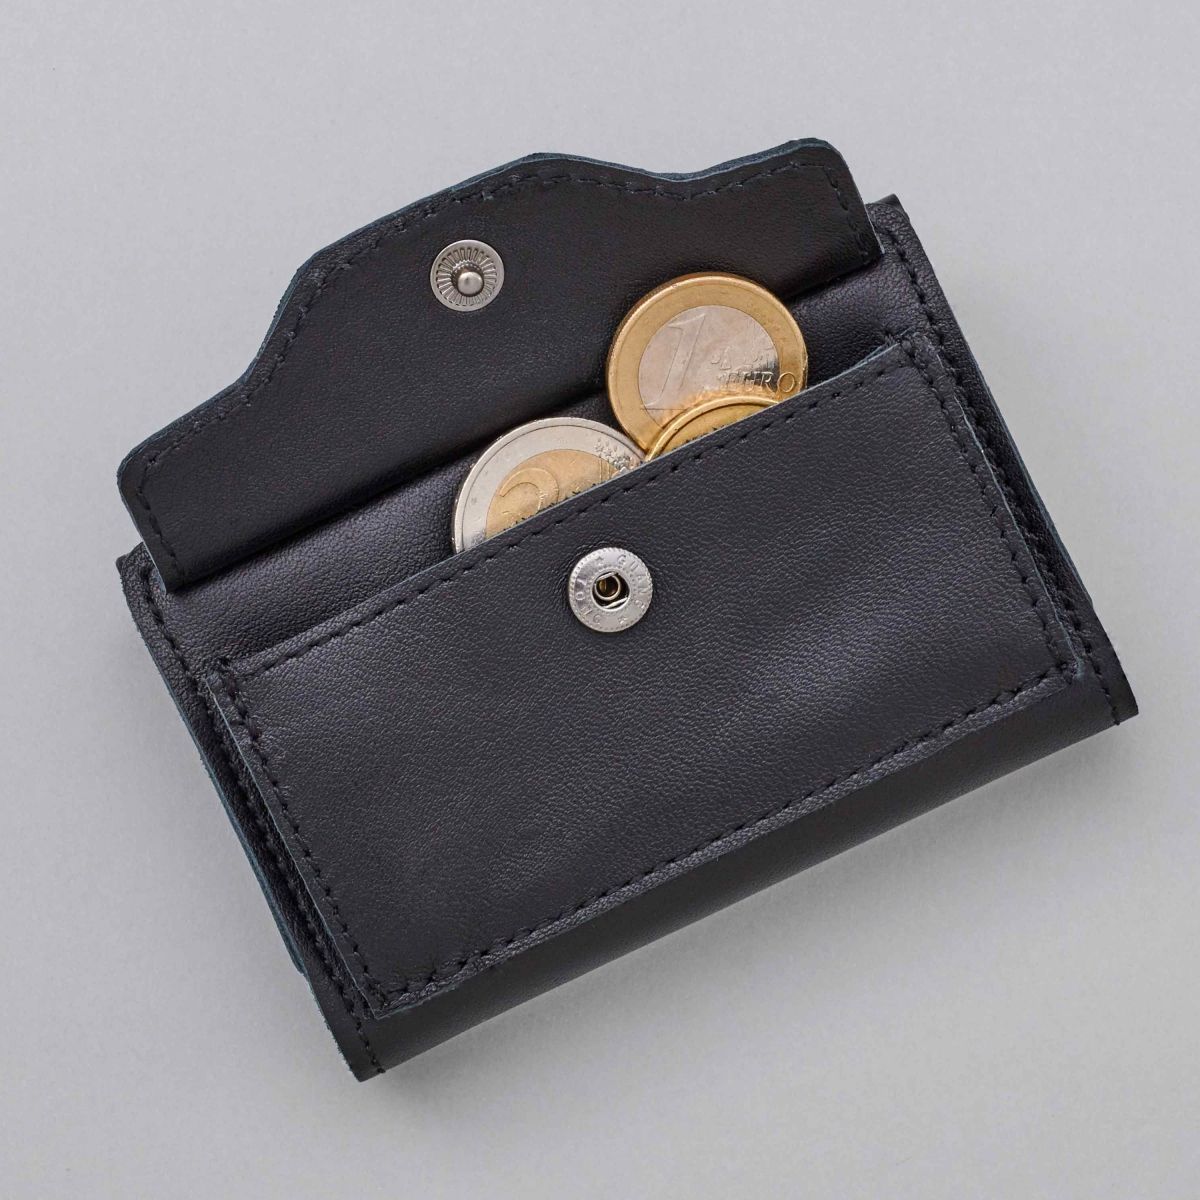 TRU VIRTU Click n Slide Wallet With Coin Pocket - Brown | Wallets Online